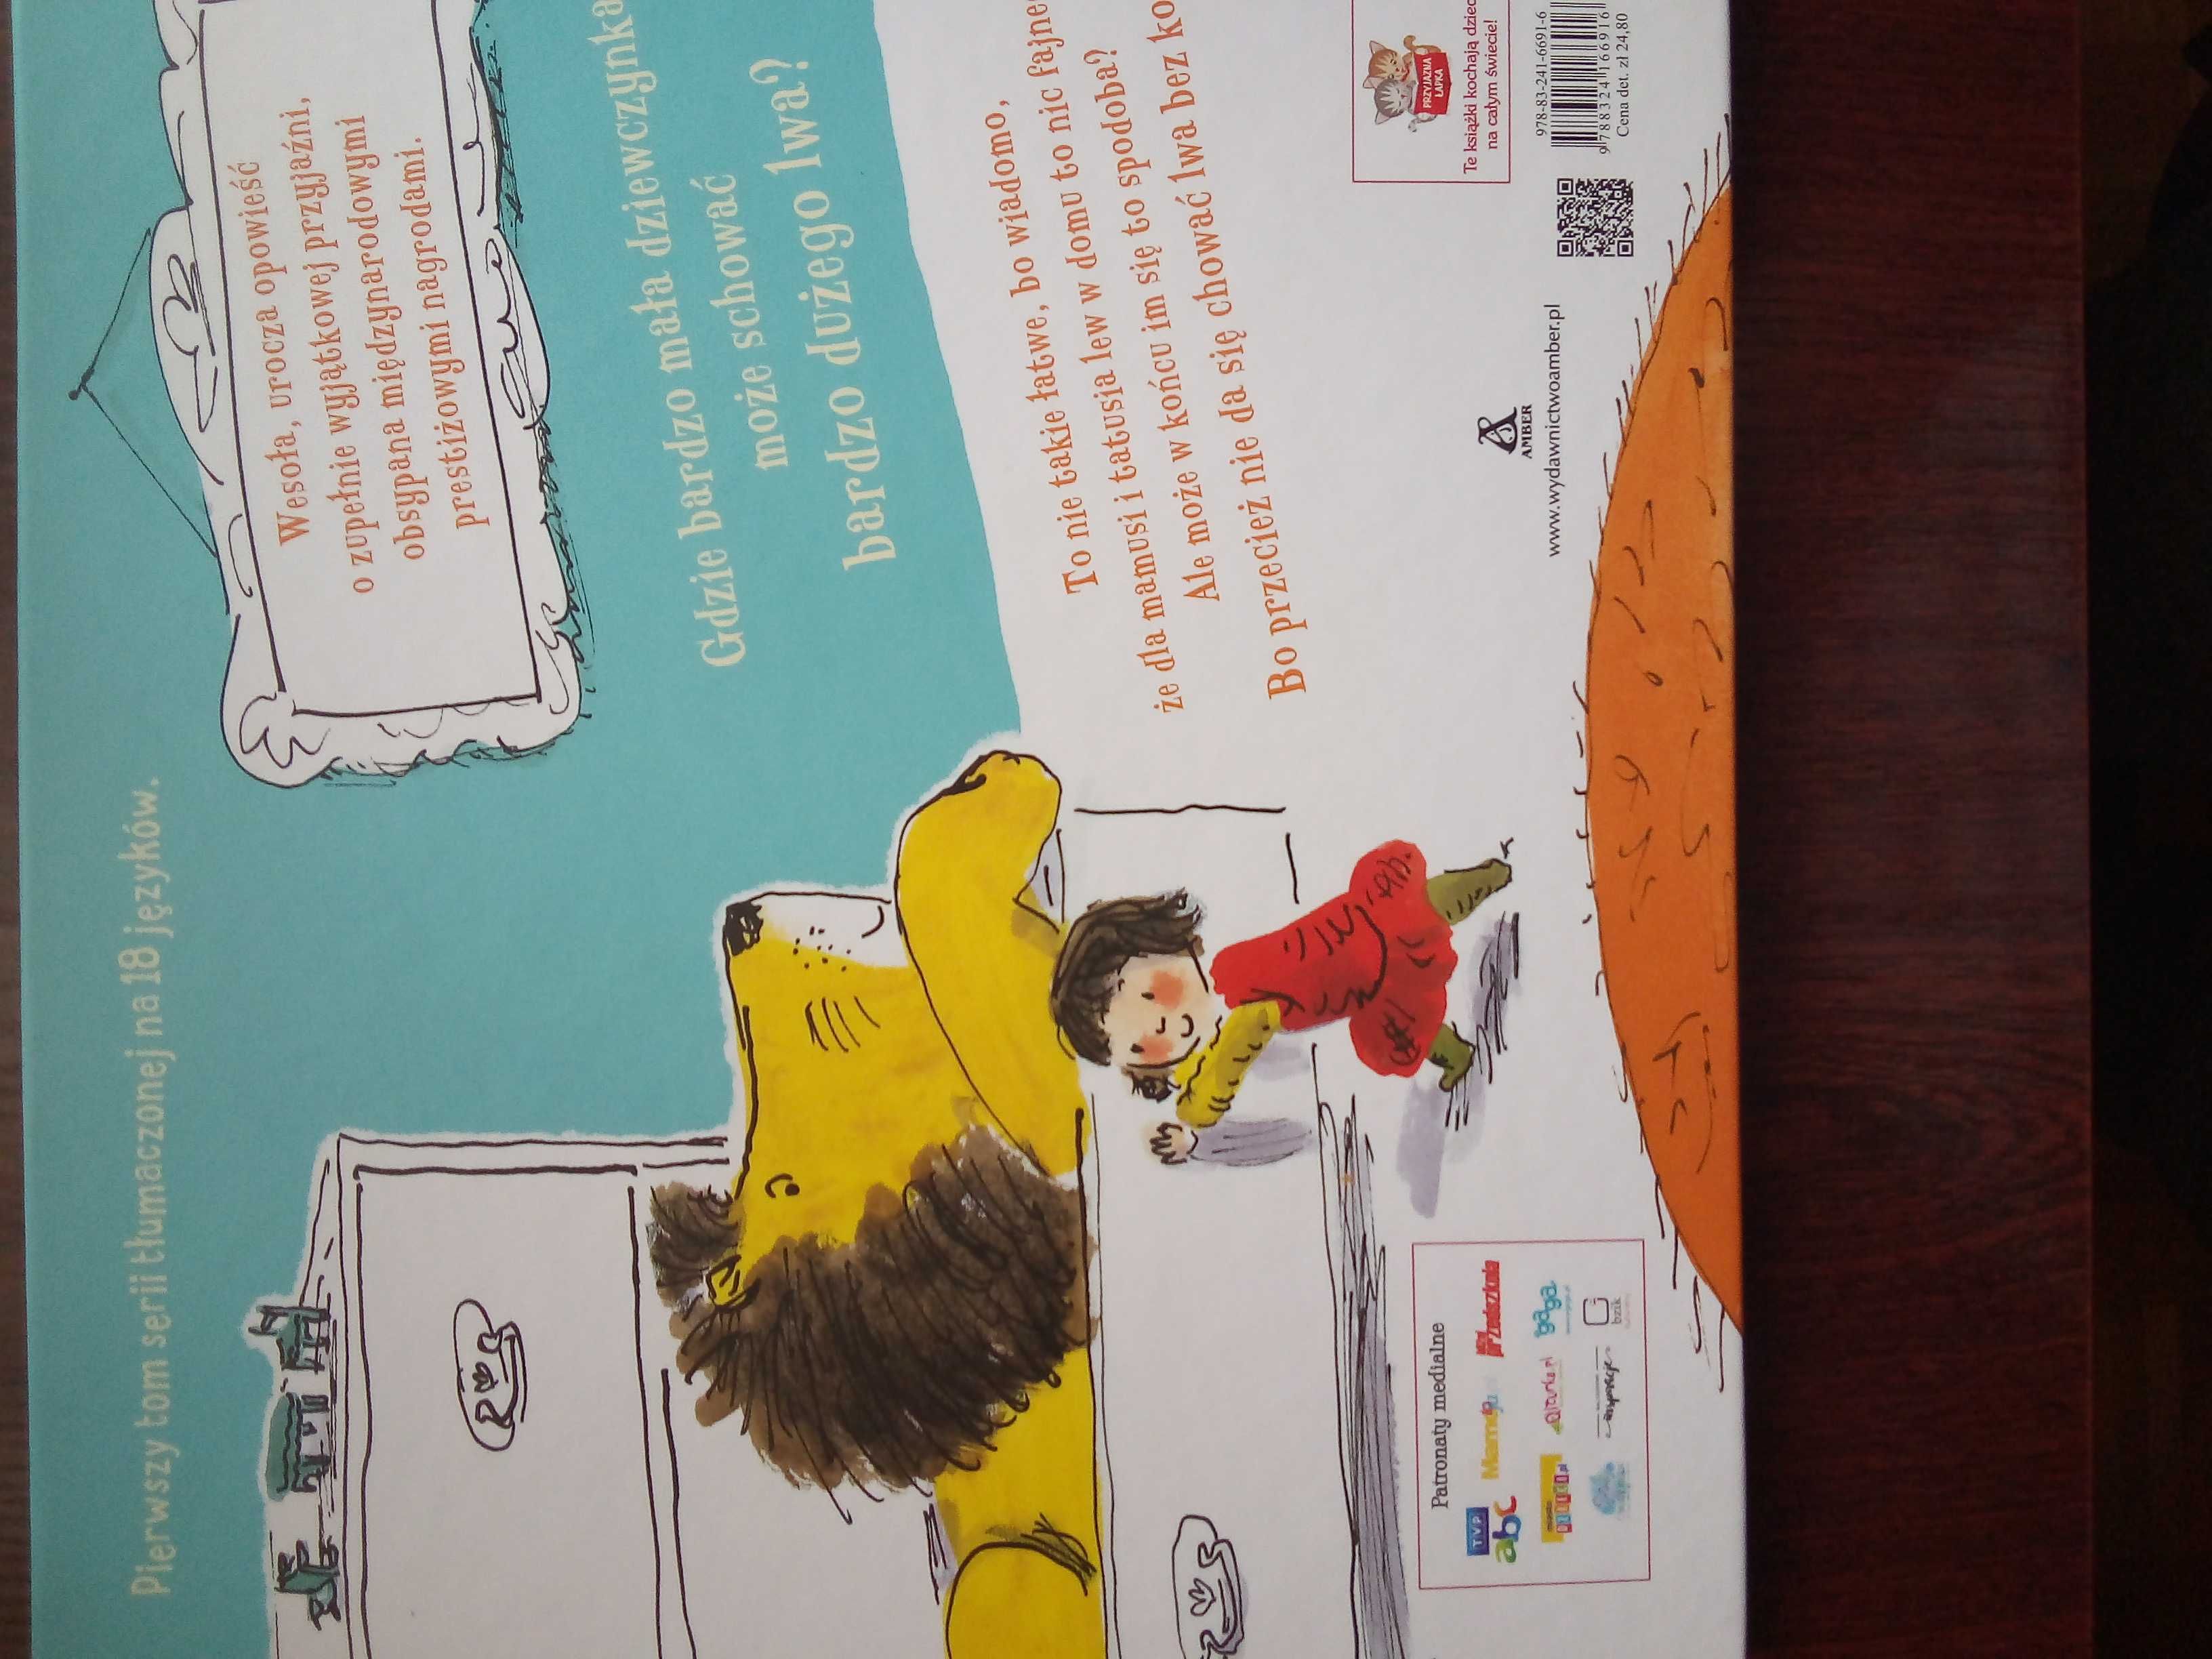 NOWA Książka dla dzieci światowy bestseller Jak schować lwa